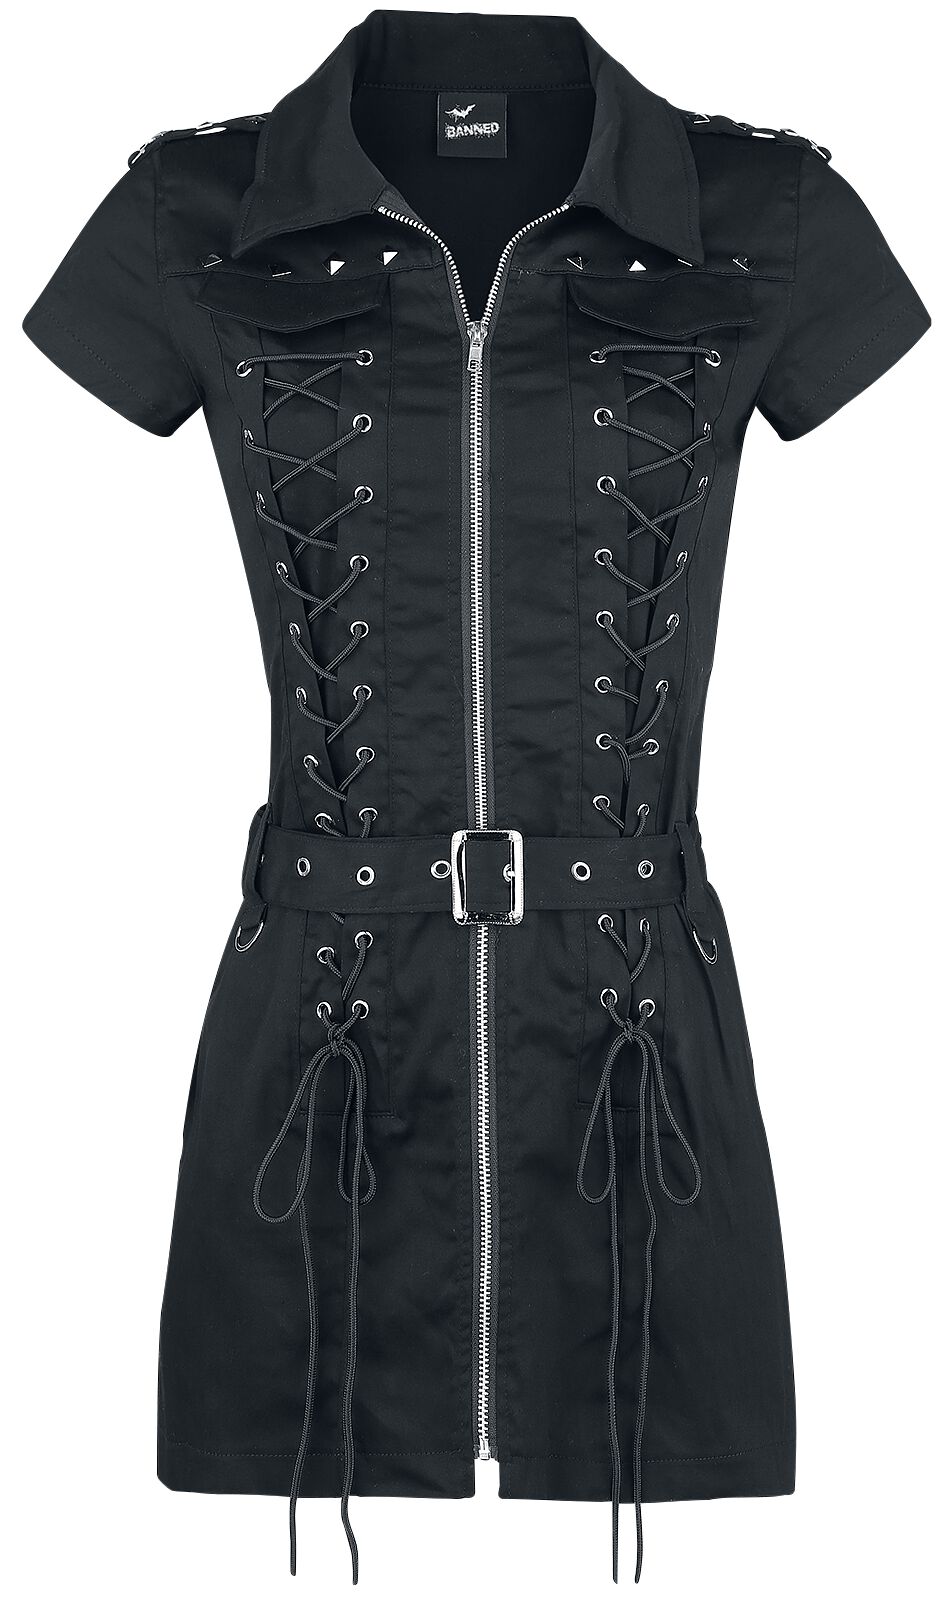 Banned Alternative Mod Dress Kurzes Kleid schwarz in XS